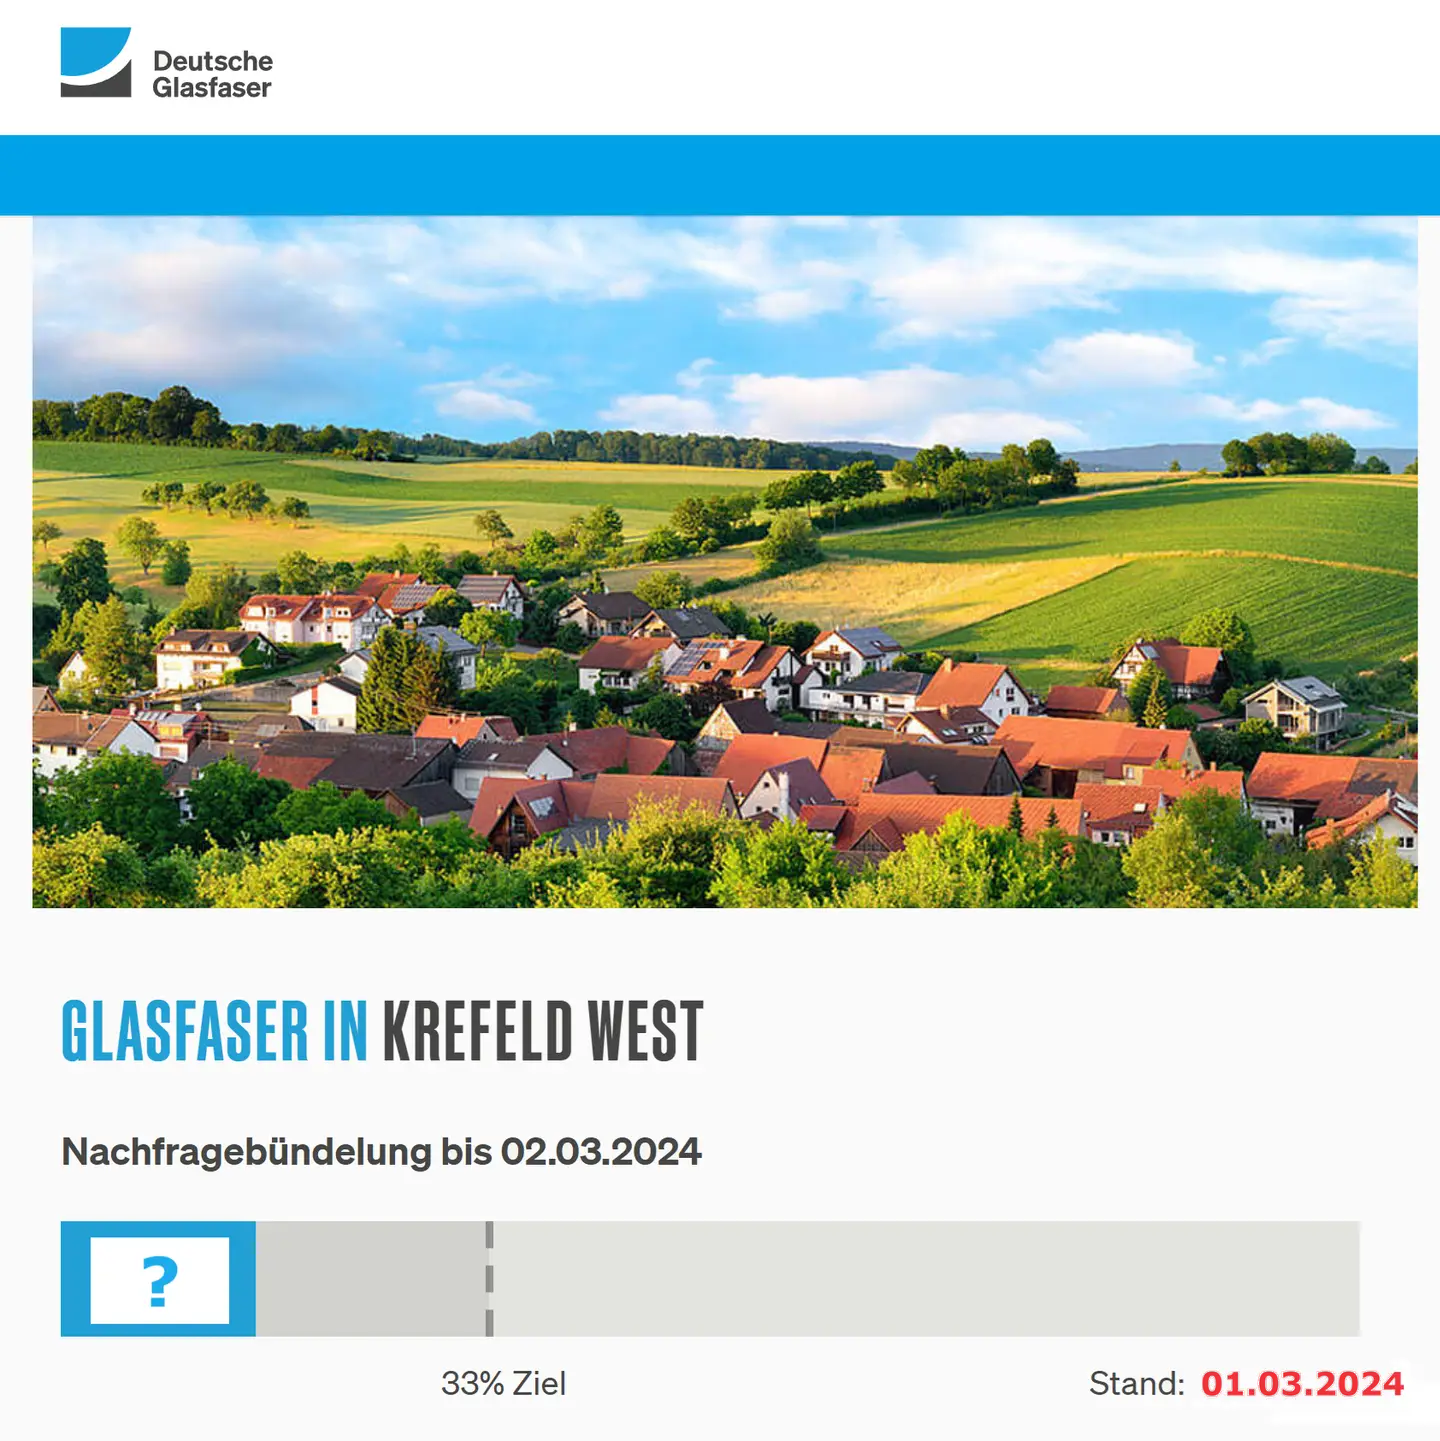 Screenshot von "Deutsche Glasfaser", oben DG Logo, ein Landschaftsbild, Schriftzüge "Glasfaser in Krefeld-West", Nachfragebündelung bis 2.3.2024, Anzeige der aktuellen Prozentzahl duch "?" ersetzt, von 33% Ziel